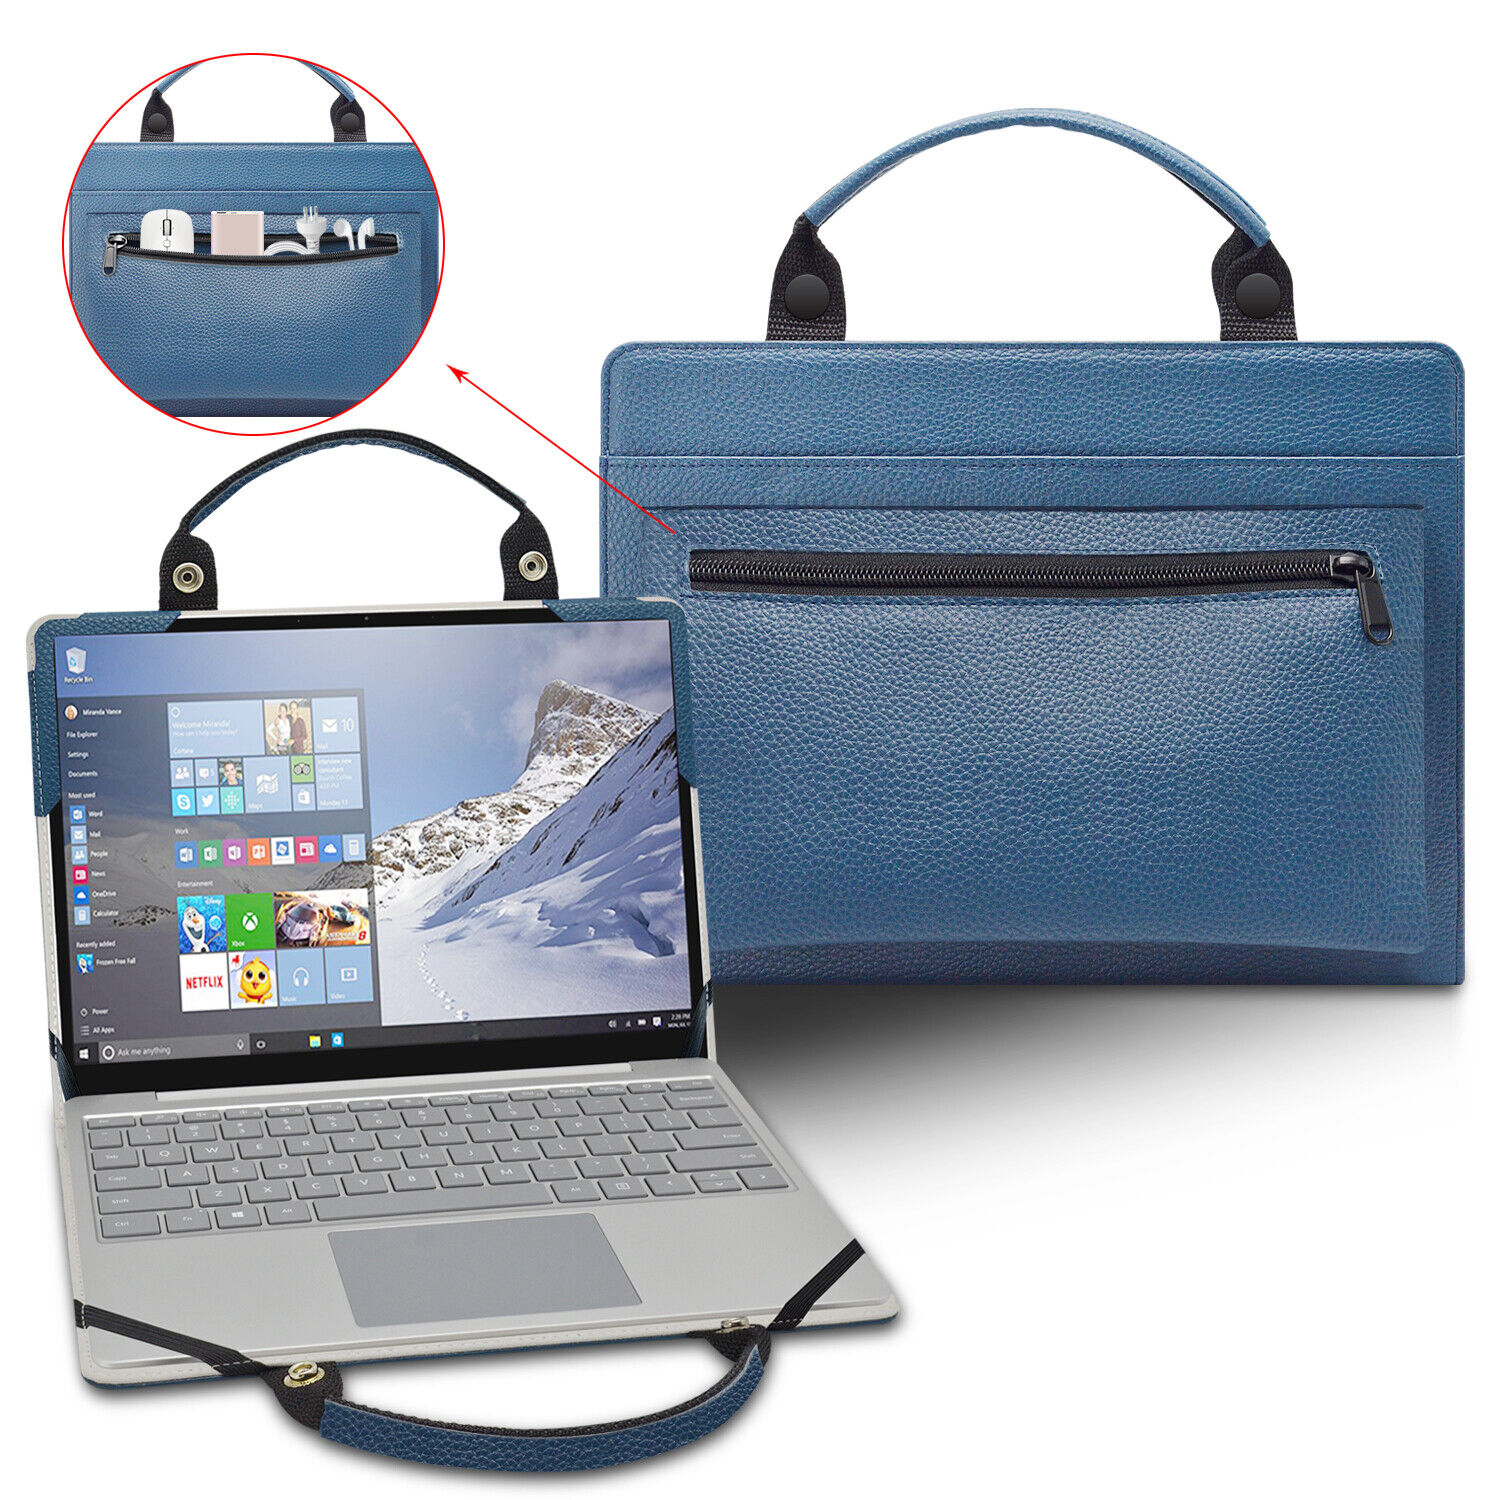 Laptop Case for LG gram 13Z970/LG gram 13Z980 13Z990